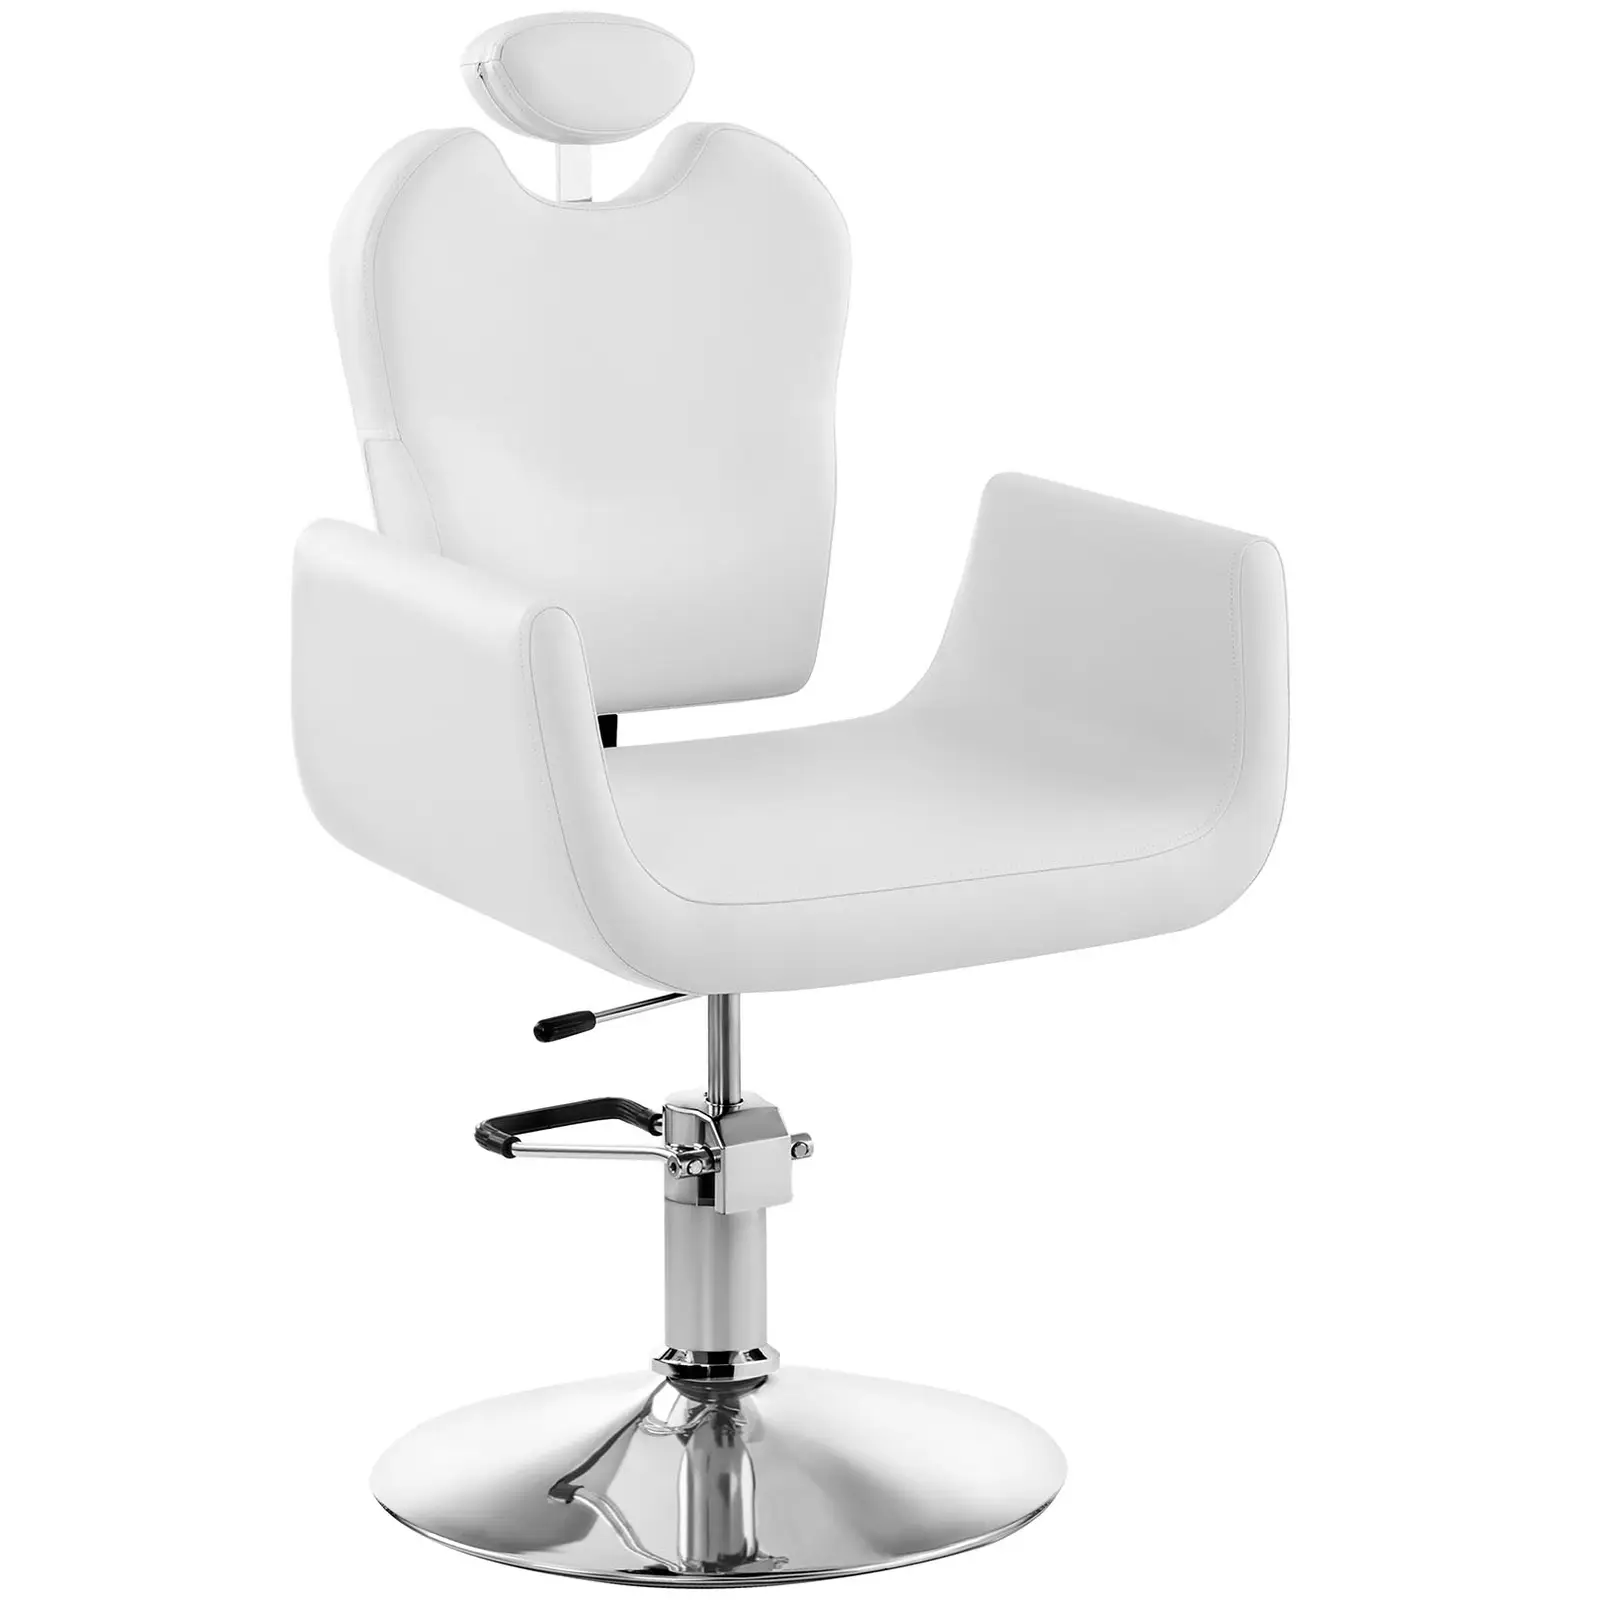 Fodrász szék Livorno fehér